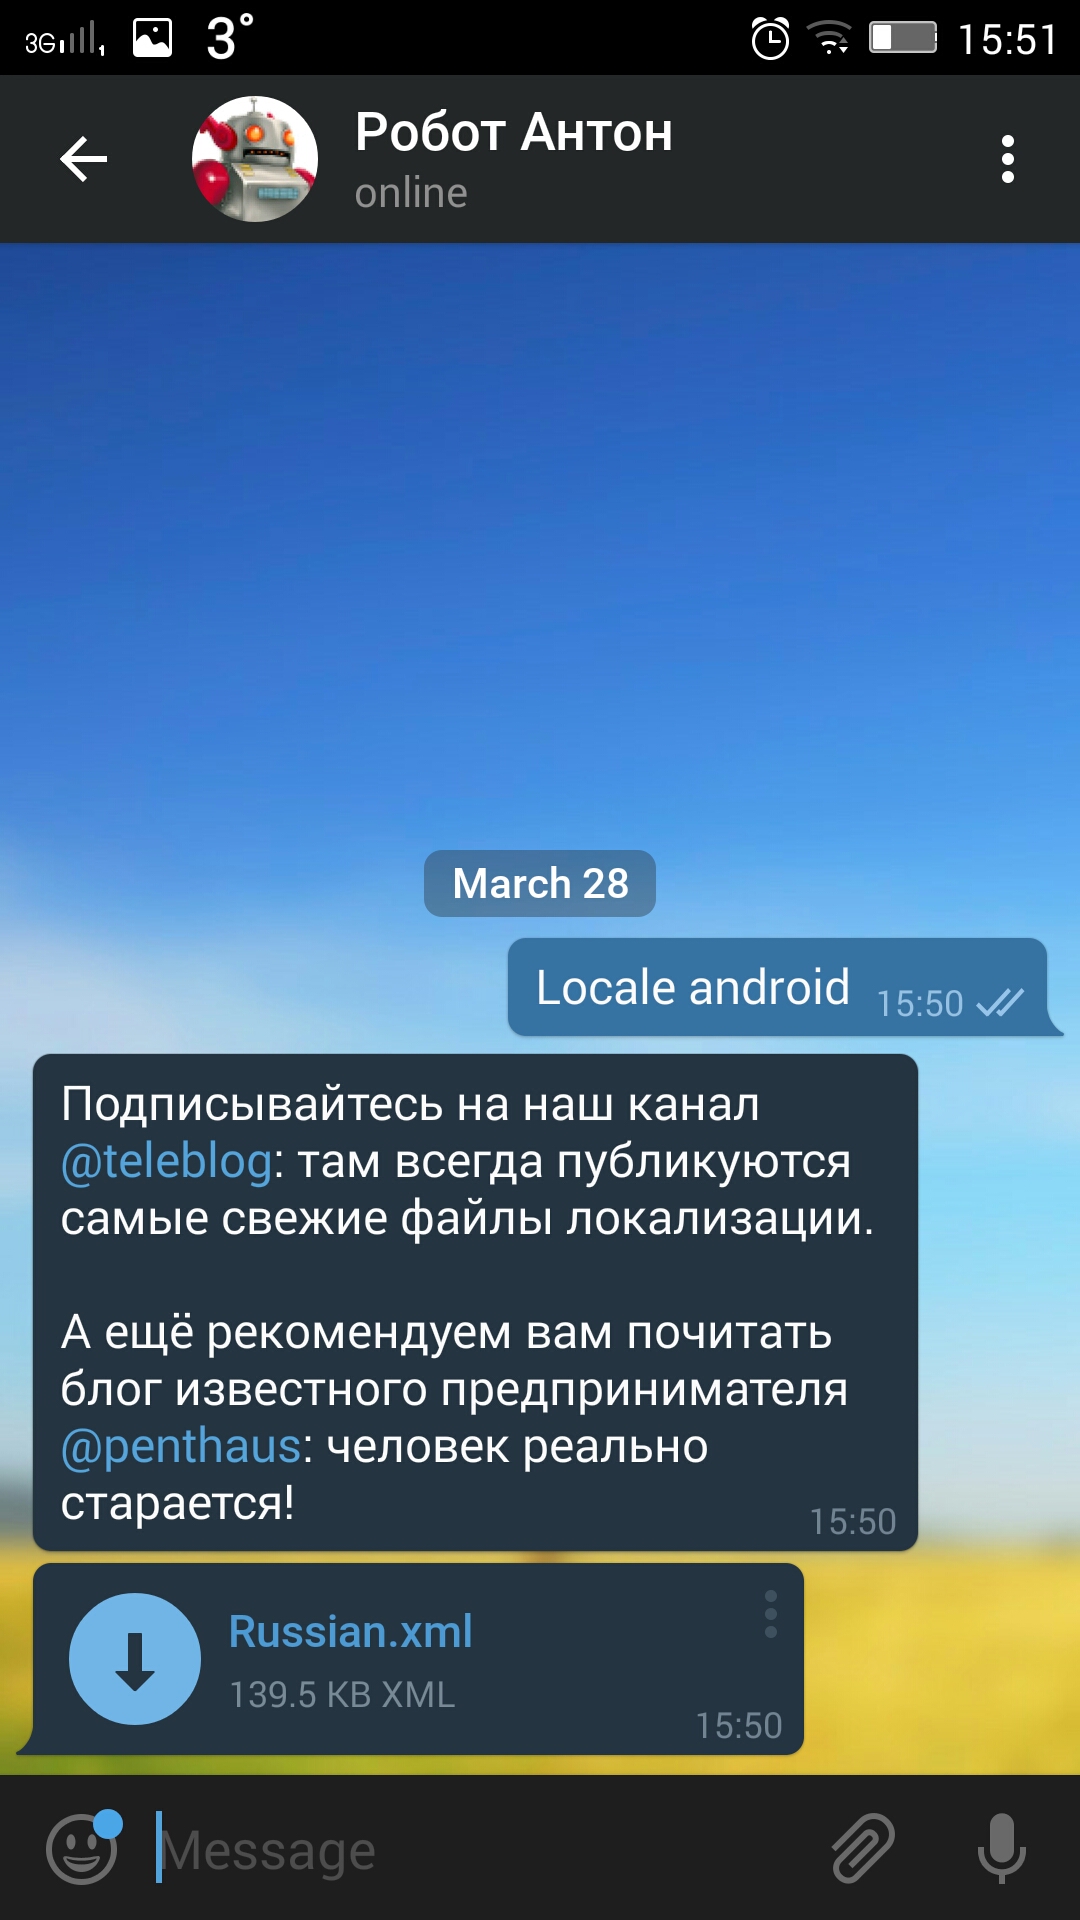 Как сделать в телеграмме русский язык на андроиде с фото 69